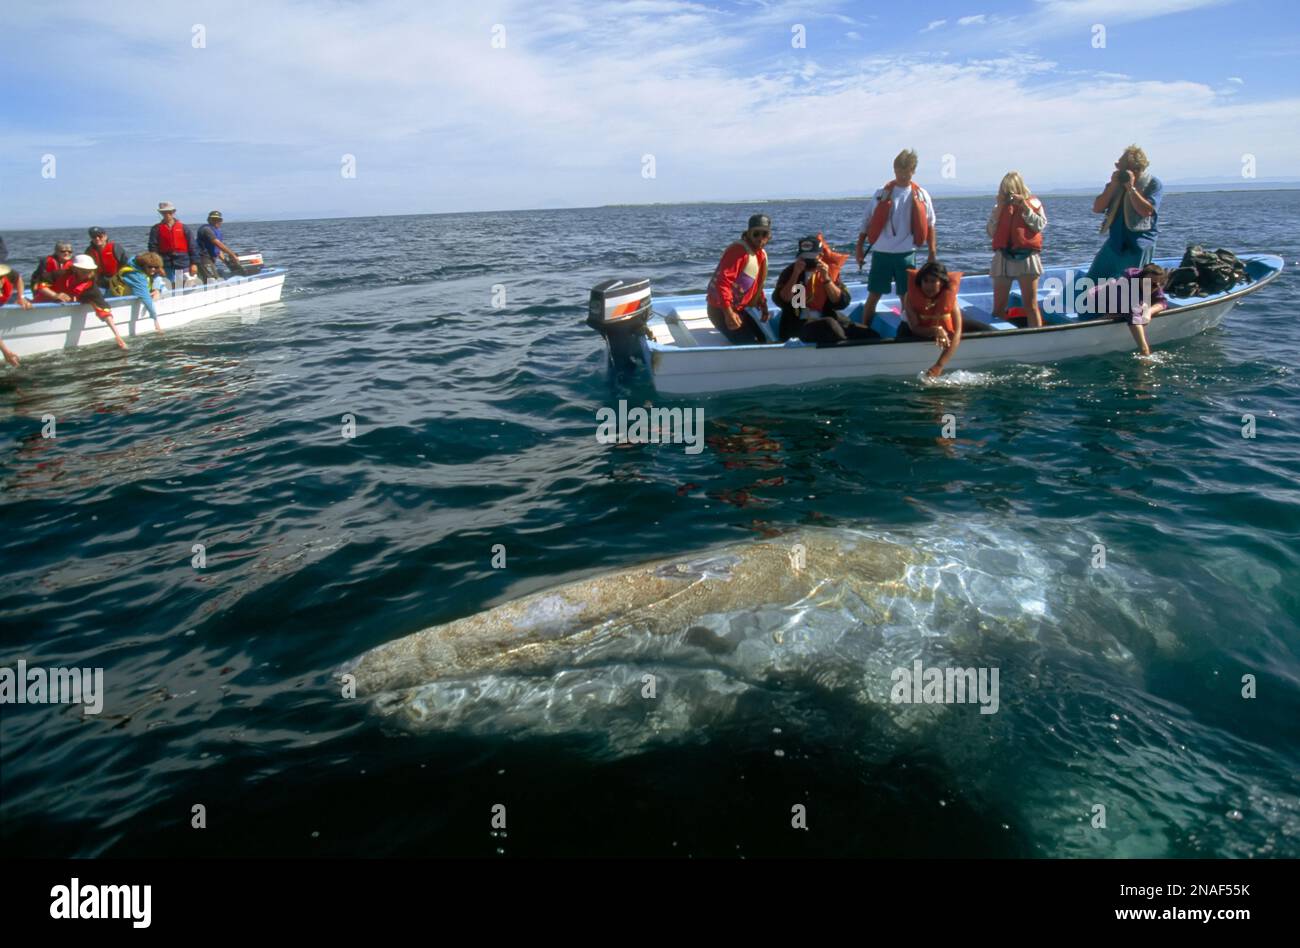 In questo vivaio invernale per le balene grigie (Eschrichtius glaucus), uno dei cetacei nuota vicino a due barche per l'avvistamento delle balene, in cerca di contatto con n... Foto Stock